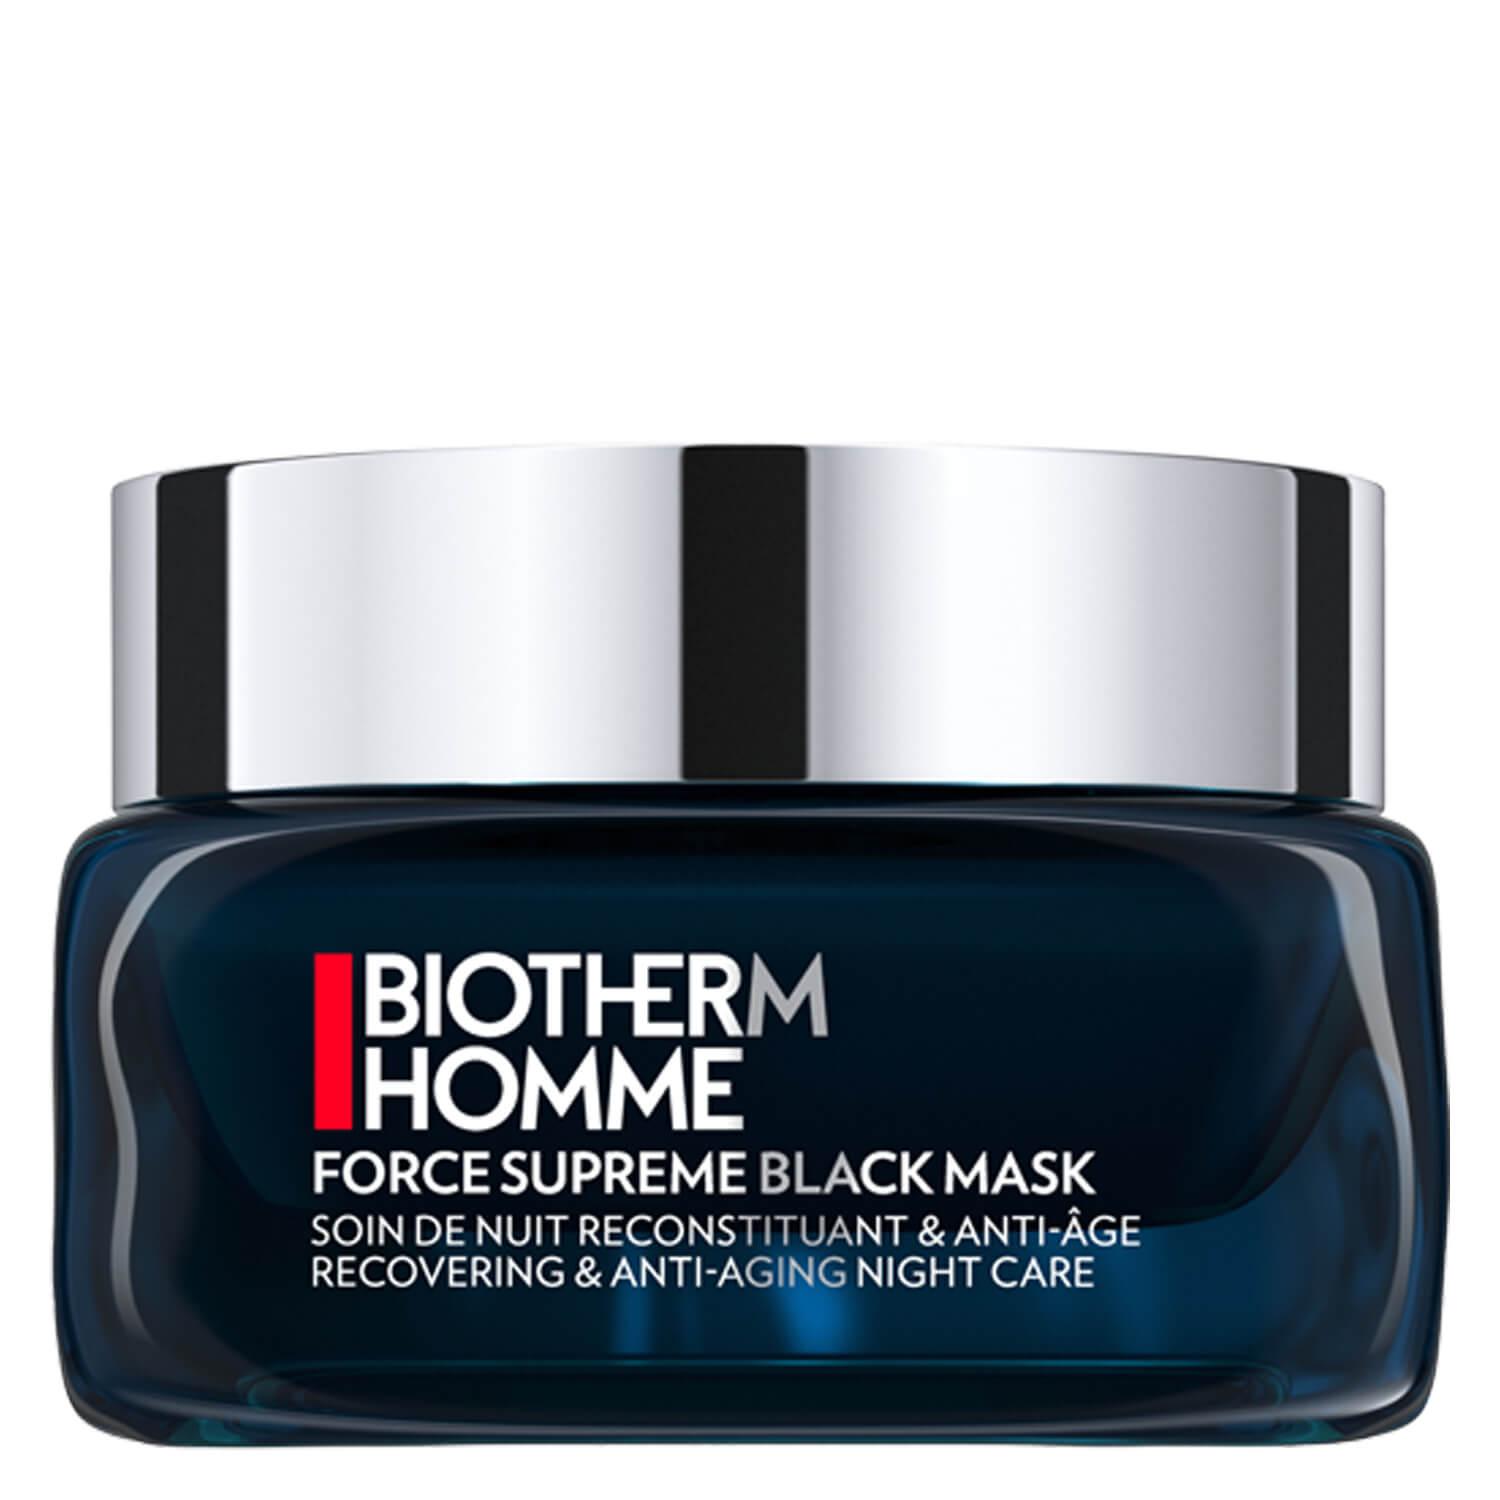 Biotherm Homme - Force Supreme Black Mask